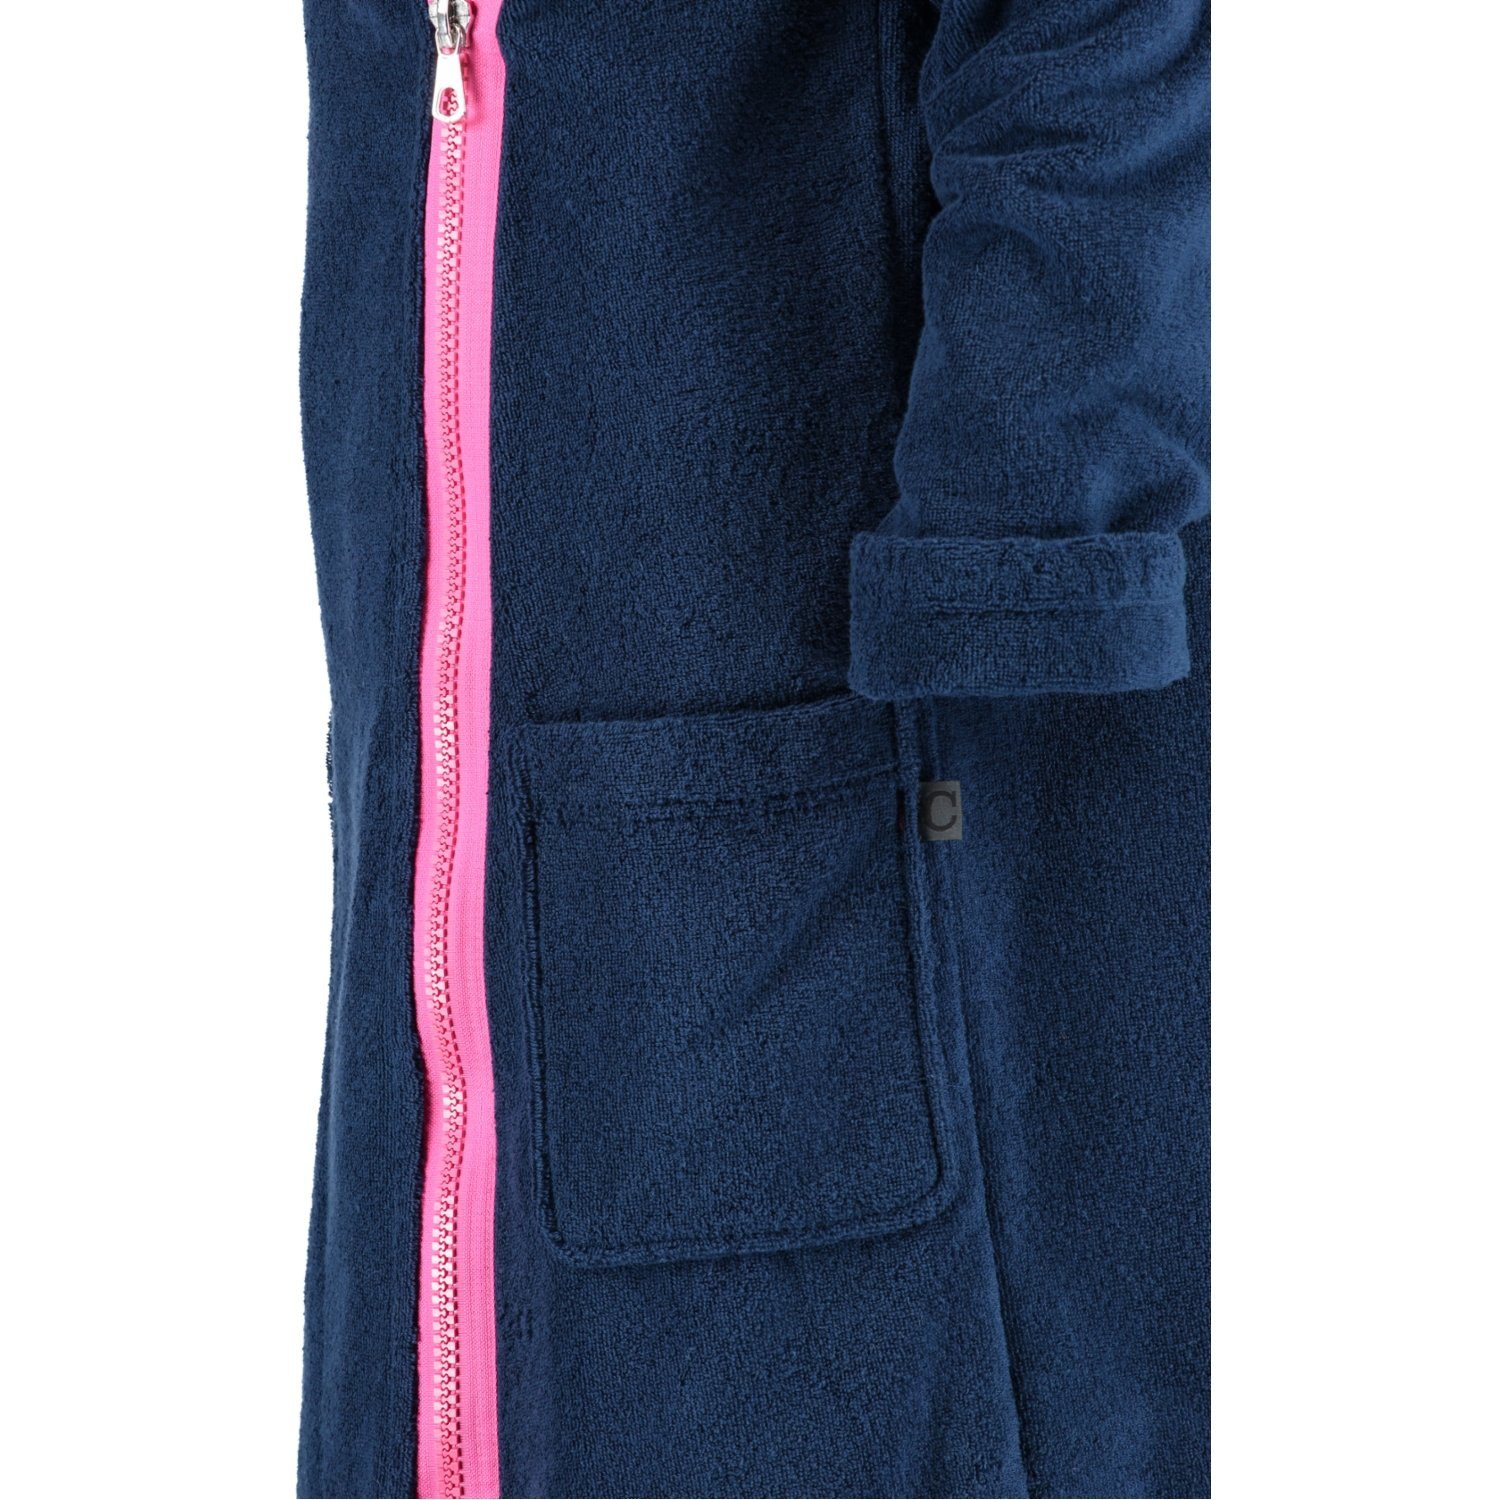 Cawö Zipper Damenbademantel Kapuze, Baumwolle, Kurzform, Reißverschluss, navy 6116, pink 133